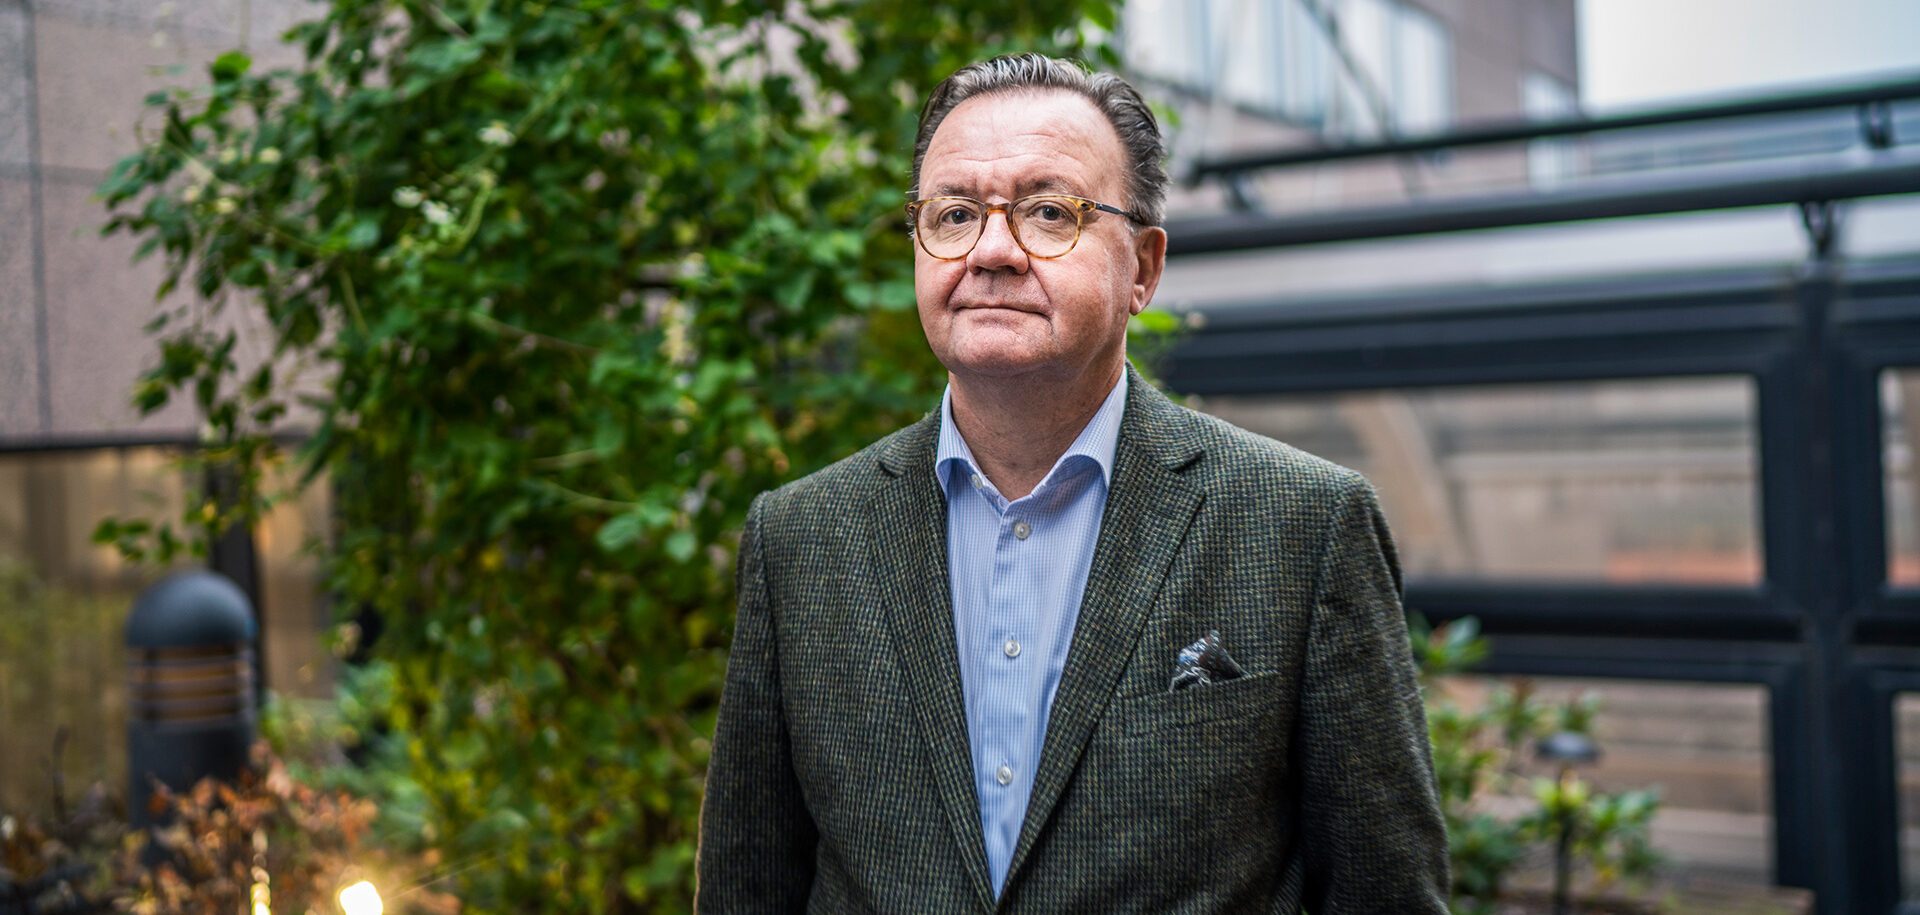 Karl-Henrik Sundström, CEO von Stora Enso, einem schwedisch-finnischen Forstunternehmen und Papier- und Zellstoffhersteller